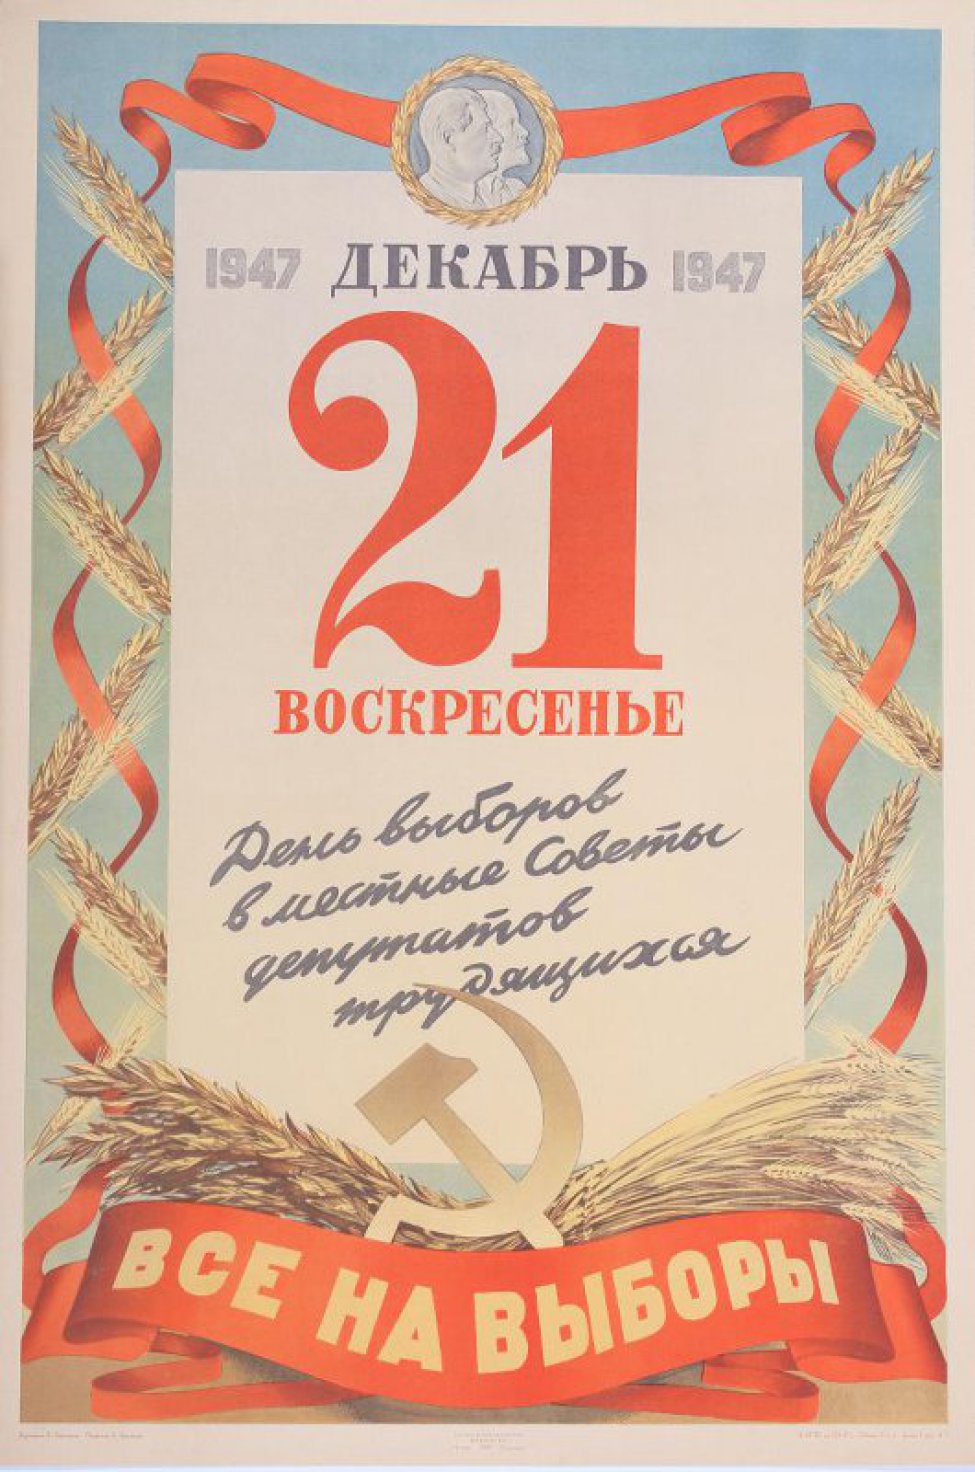 Изображено: на голубом фоне помещен листок отрывного календаря от 21 декабря 1947г. Ниже надпись:" День выборов"... Вокруг листка красная лента переплетающаяся с колосьями ржи, лавровыми ветками. Вверху барельеф: Ленин и Сталин в круглой рамке из лавровых листьев.Внизу- под лавровыми ветками, колосьями, серпом и молотом- полотнище с призывом.